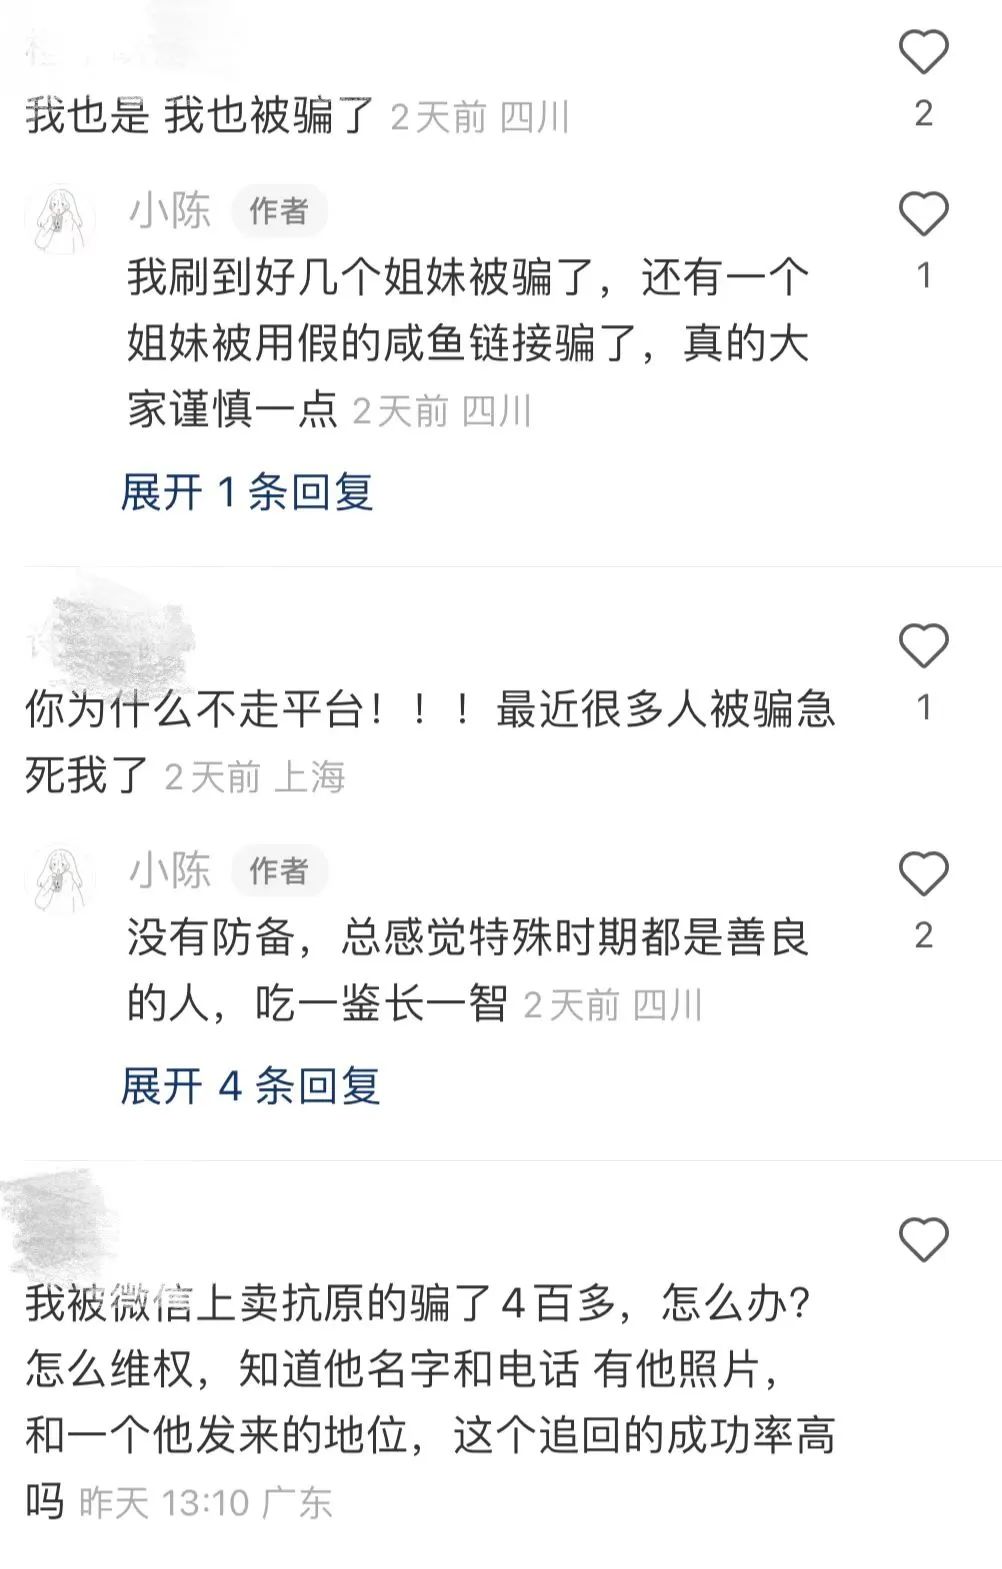 北京:朝阳一确诊病例曾到昌平天通苑停留 已摸排25名密接者